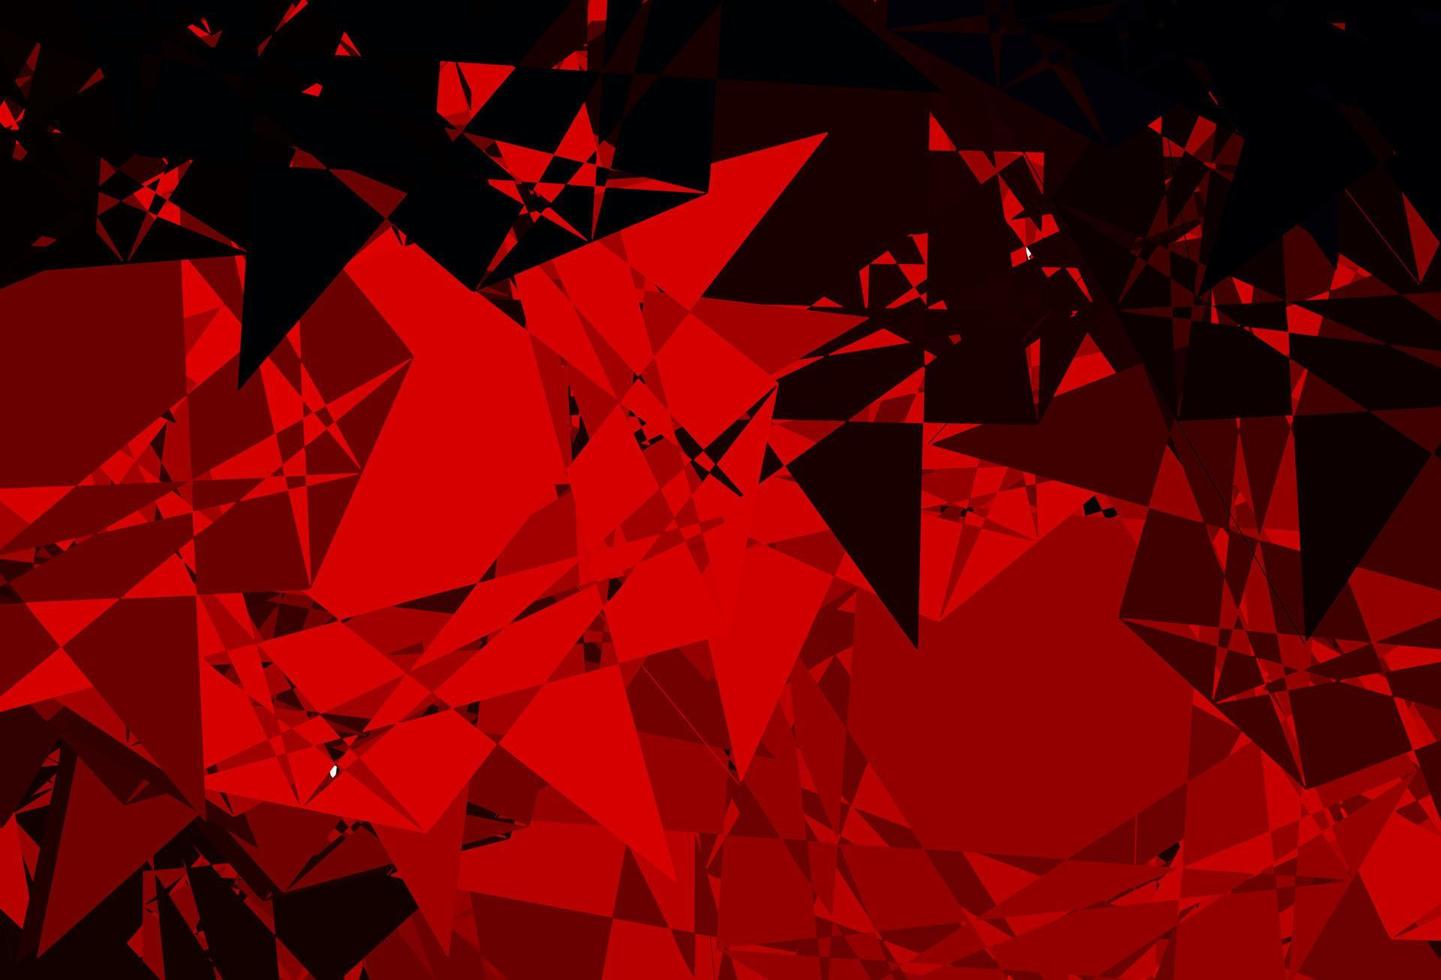 sfondo vettoriale rosso scuro con forme casuali.